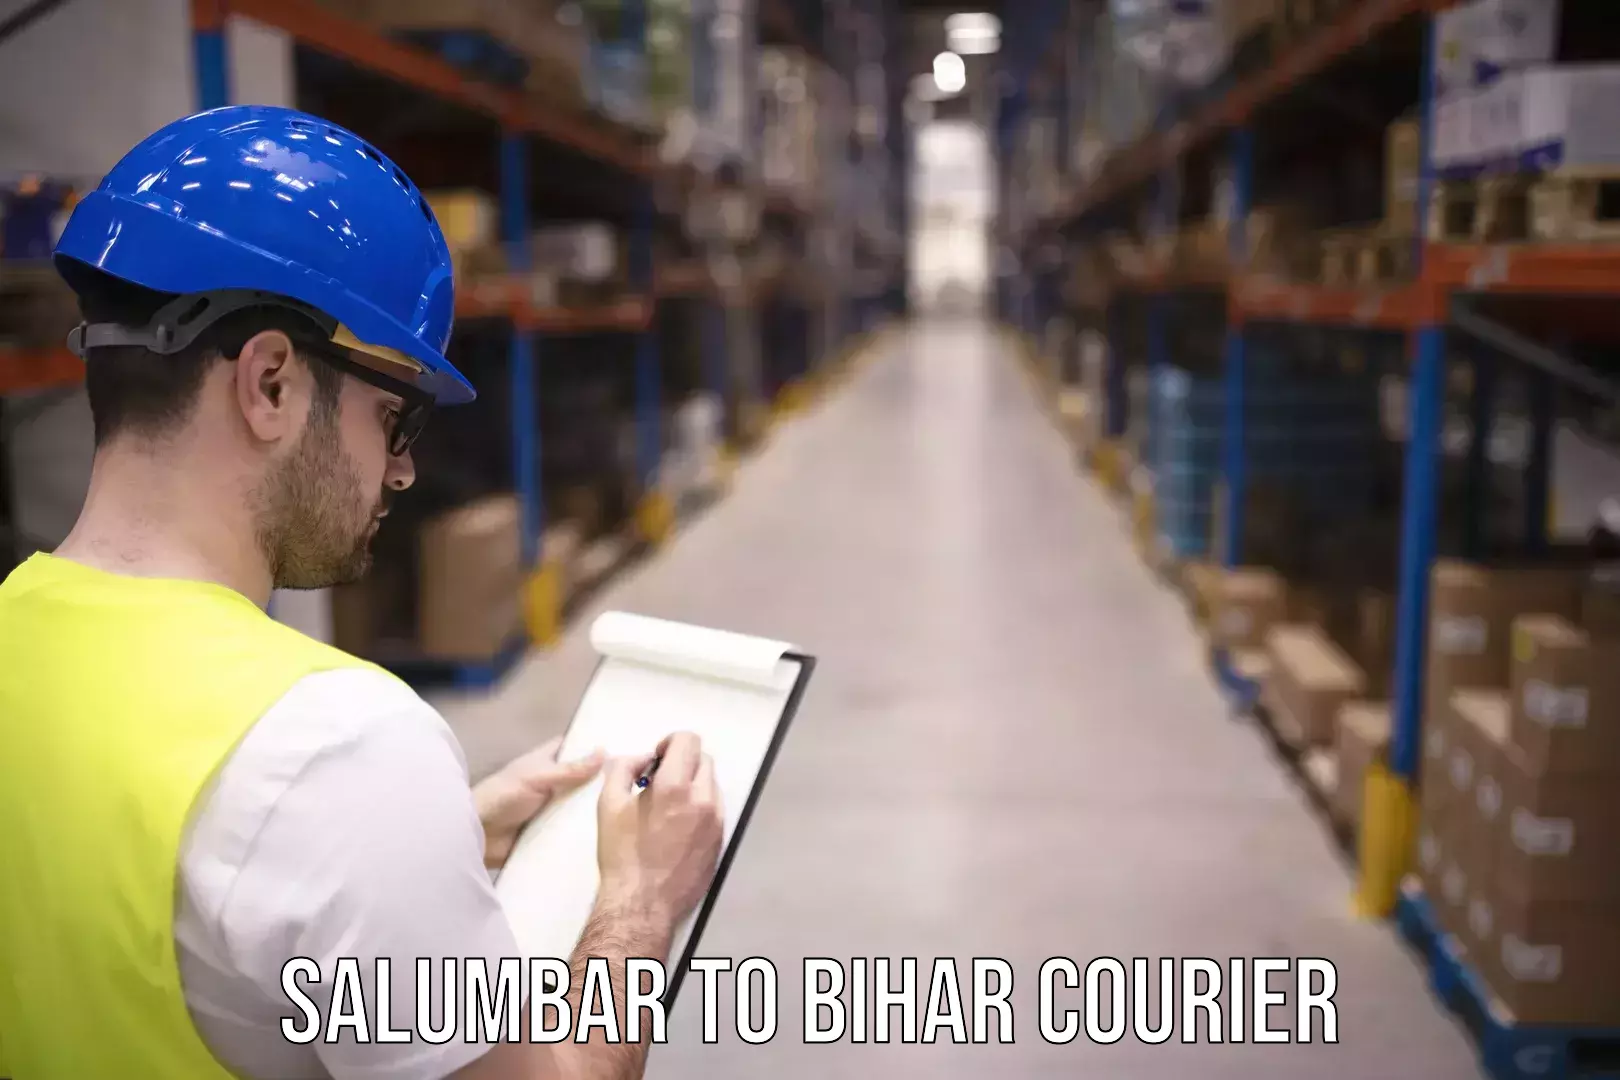 24/7 courier service Salumbar to Bihta